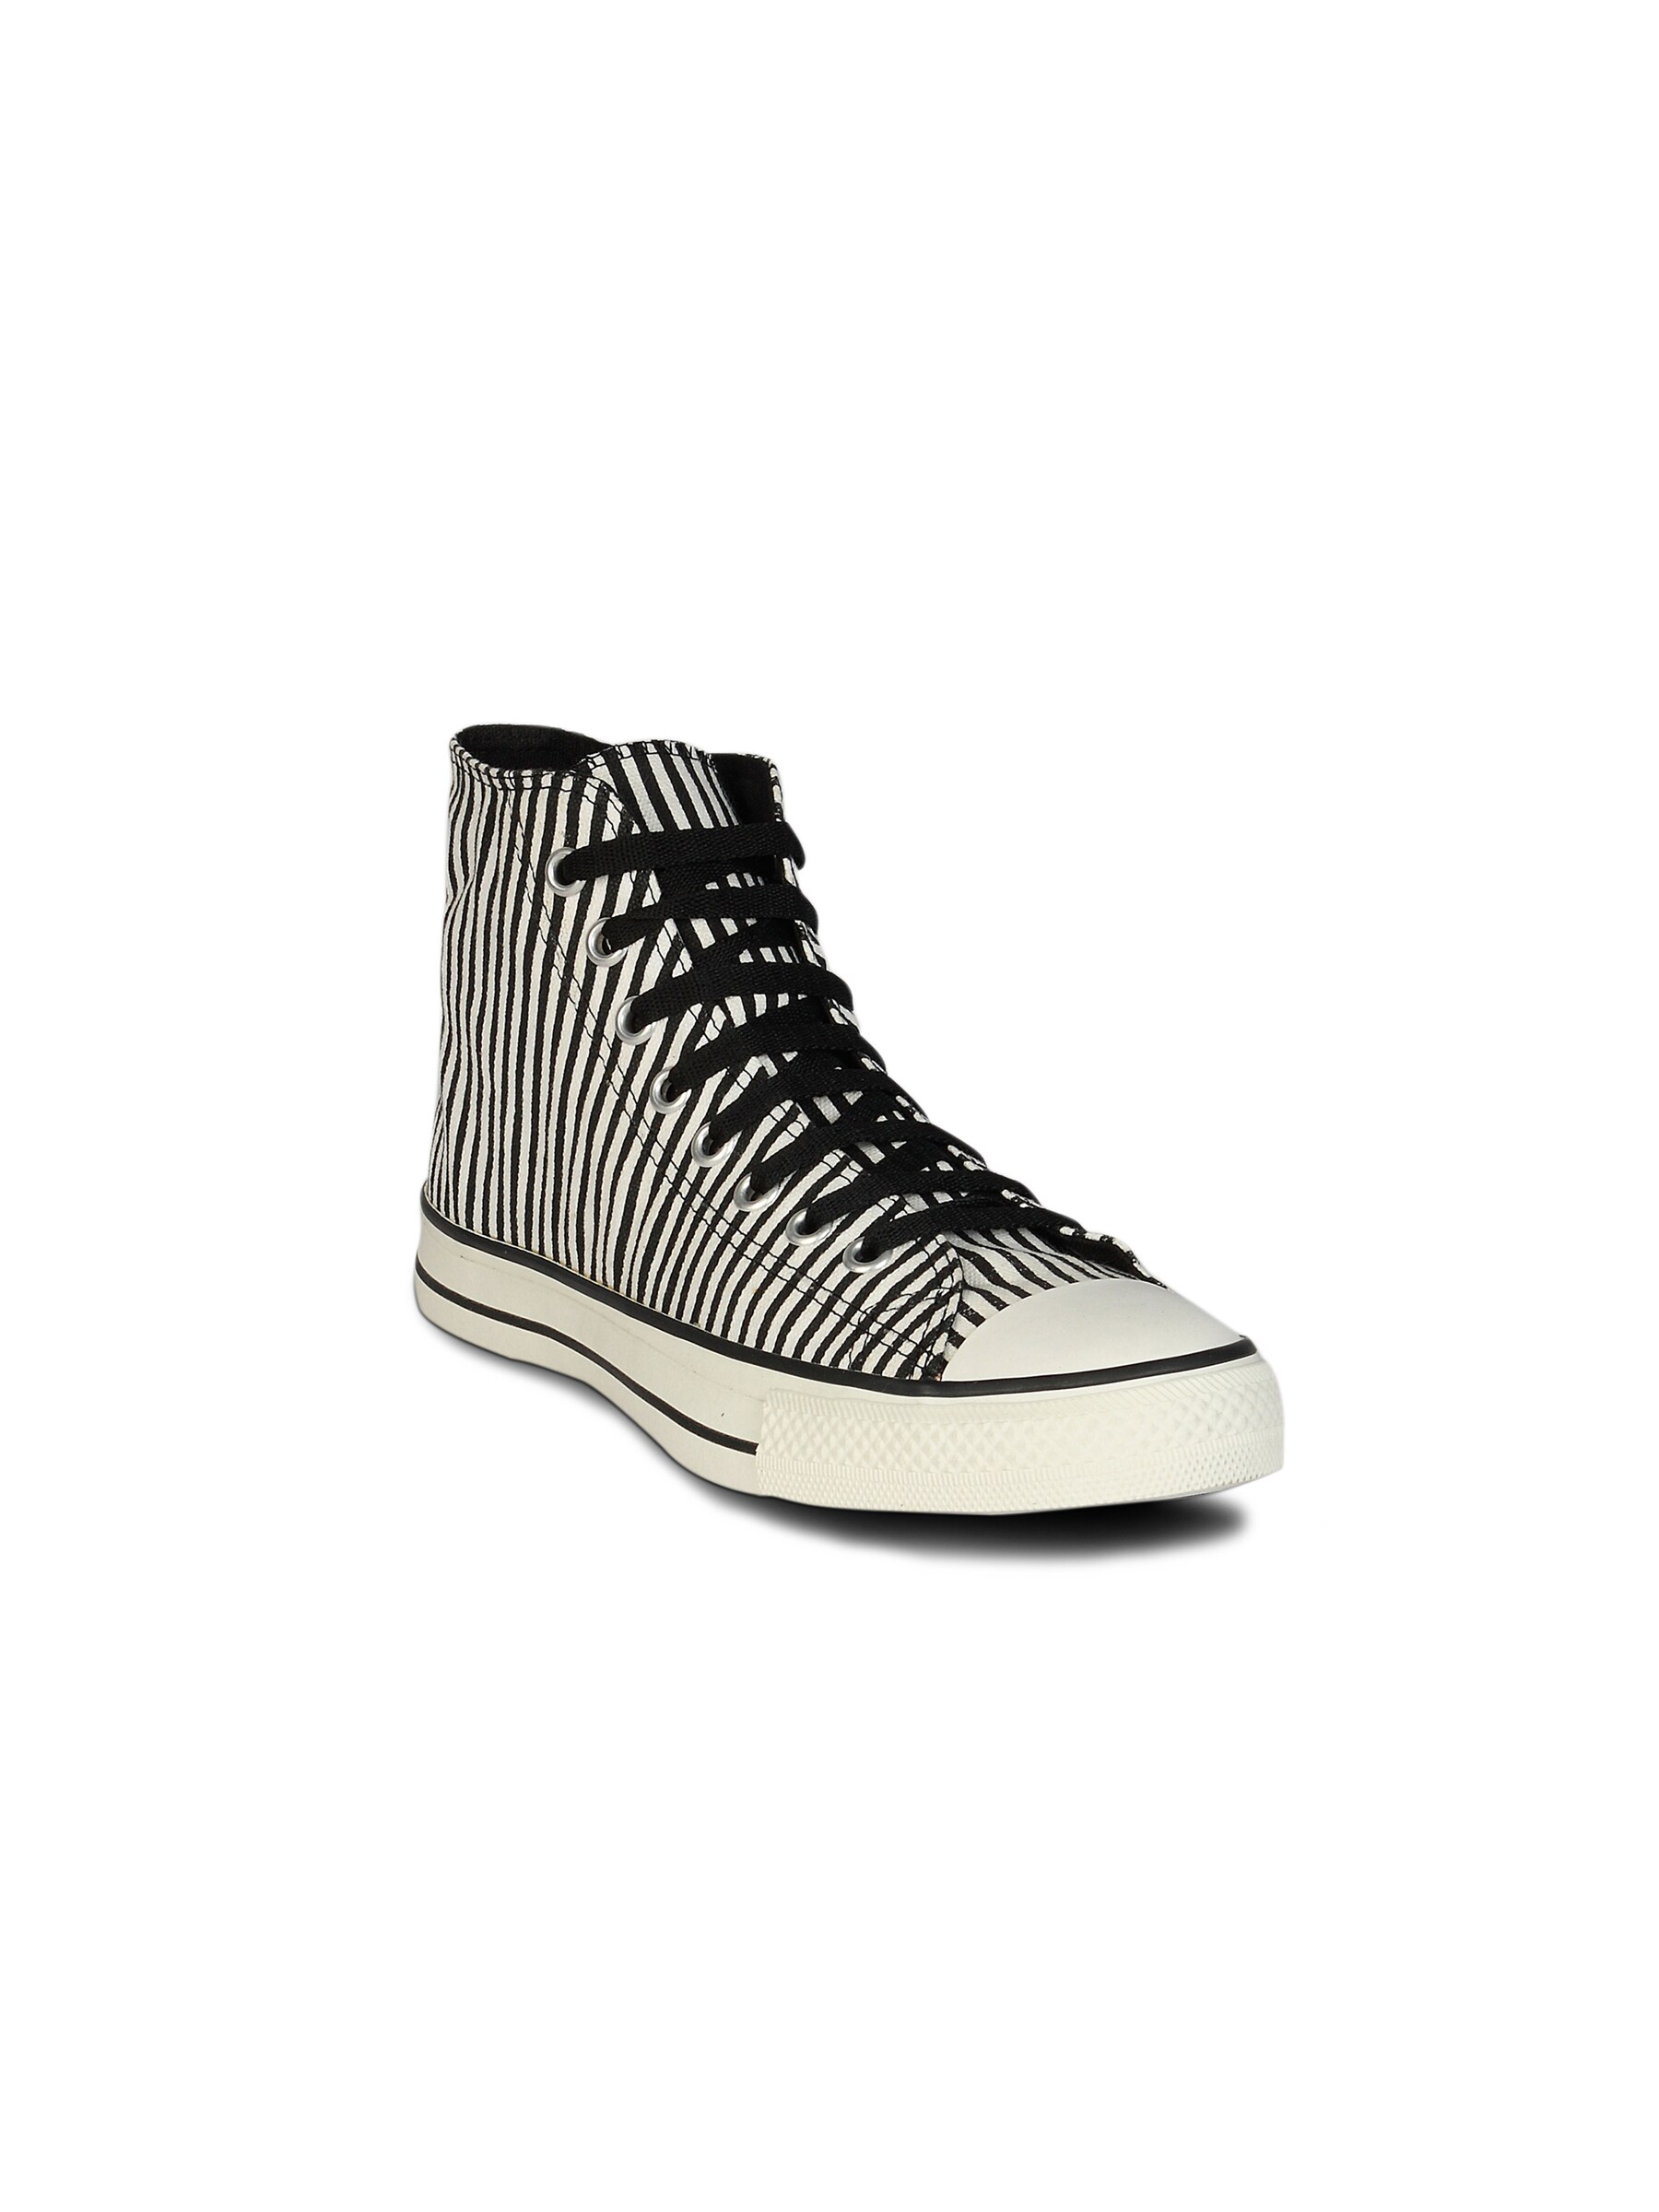 Converse Unisex Strips White Black Canvas Shoe